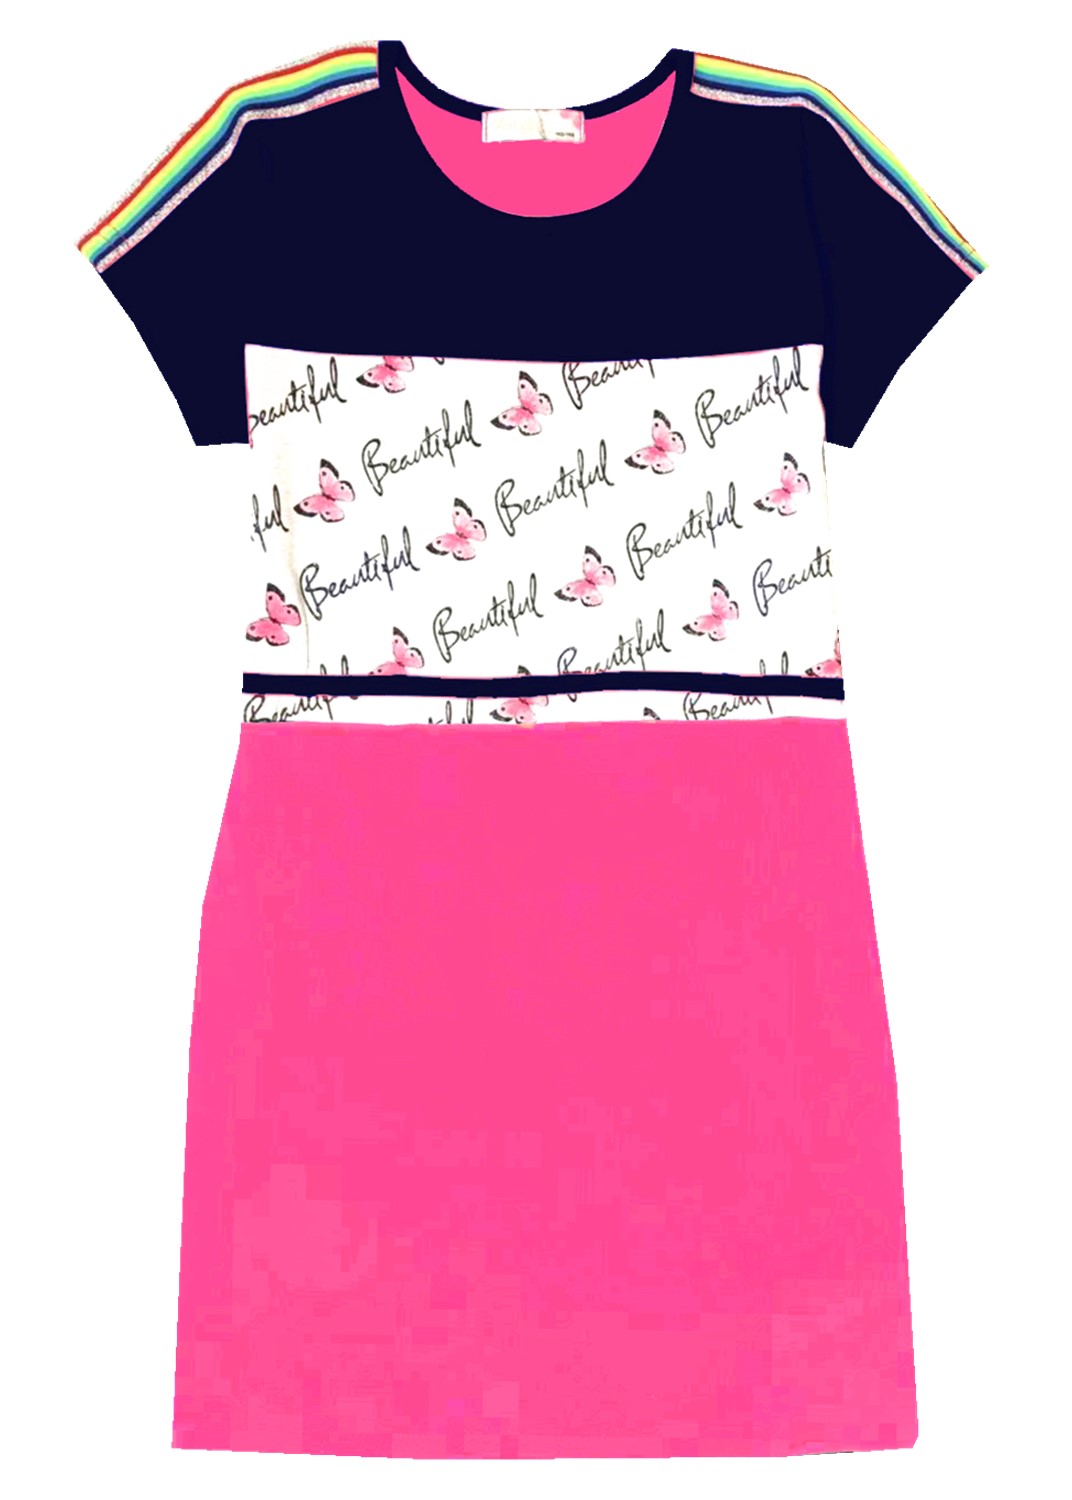 Dívčí šaty - KUGO K901, vel.134-164 Barva: Vzor 1, Velikost: 158-164